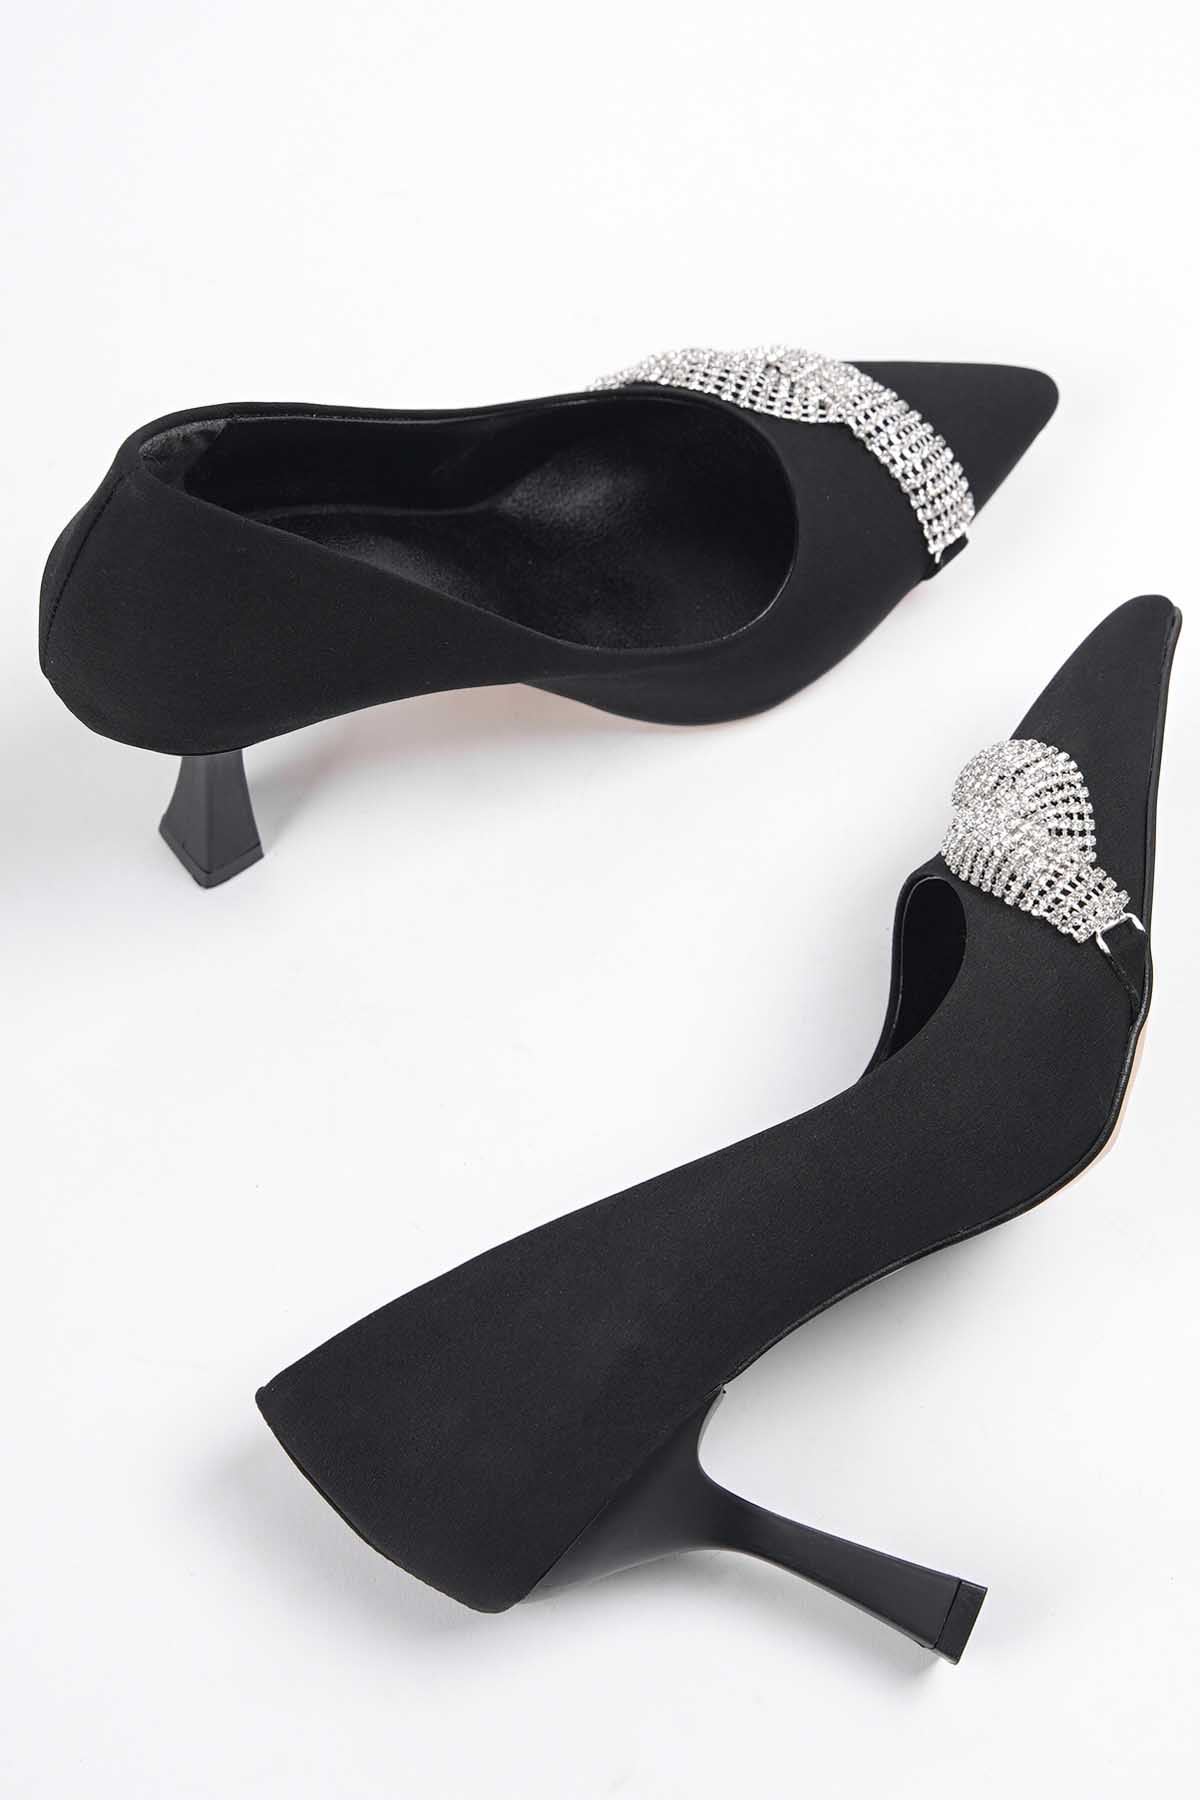 Kadın Jude Taşlı Stiletto  Ayakkabı - Siyah